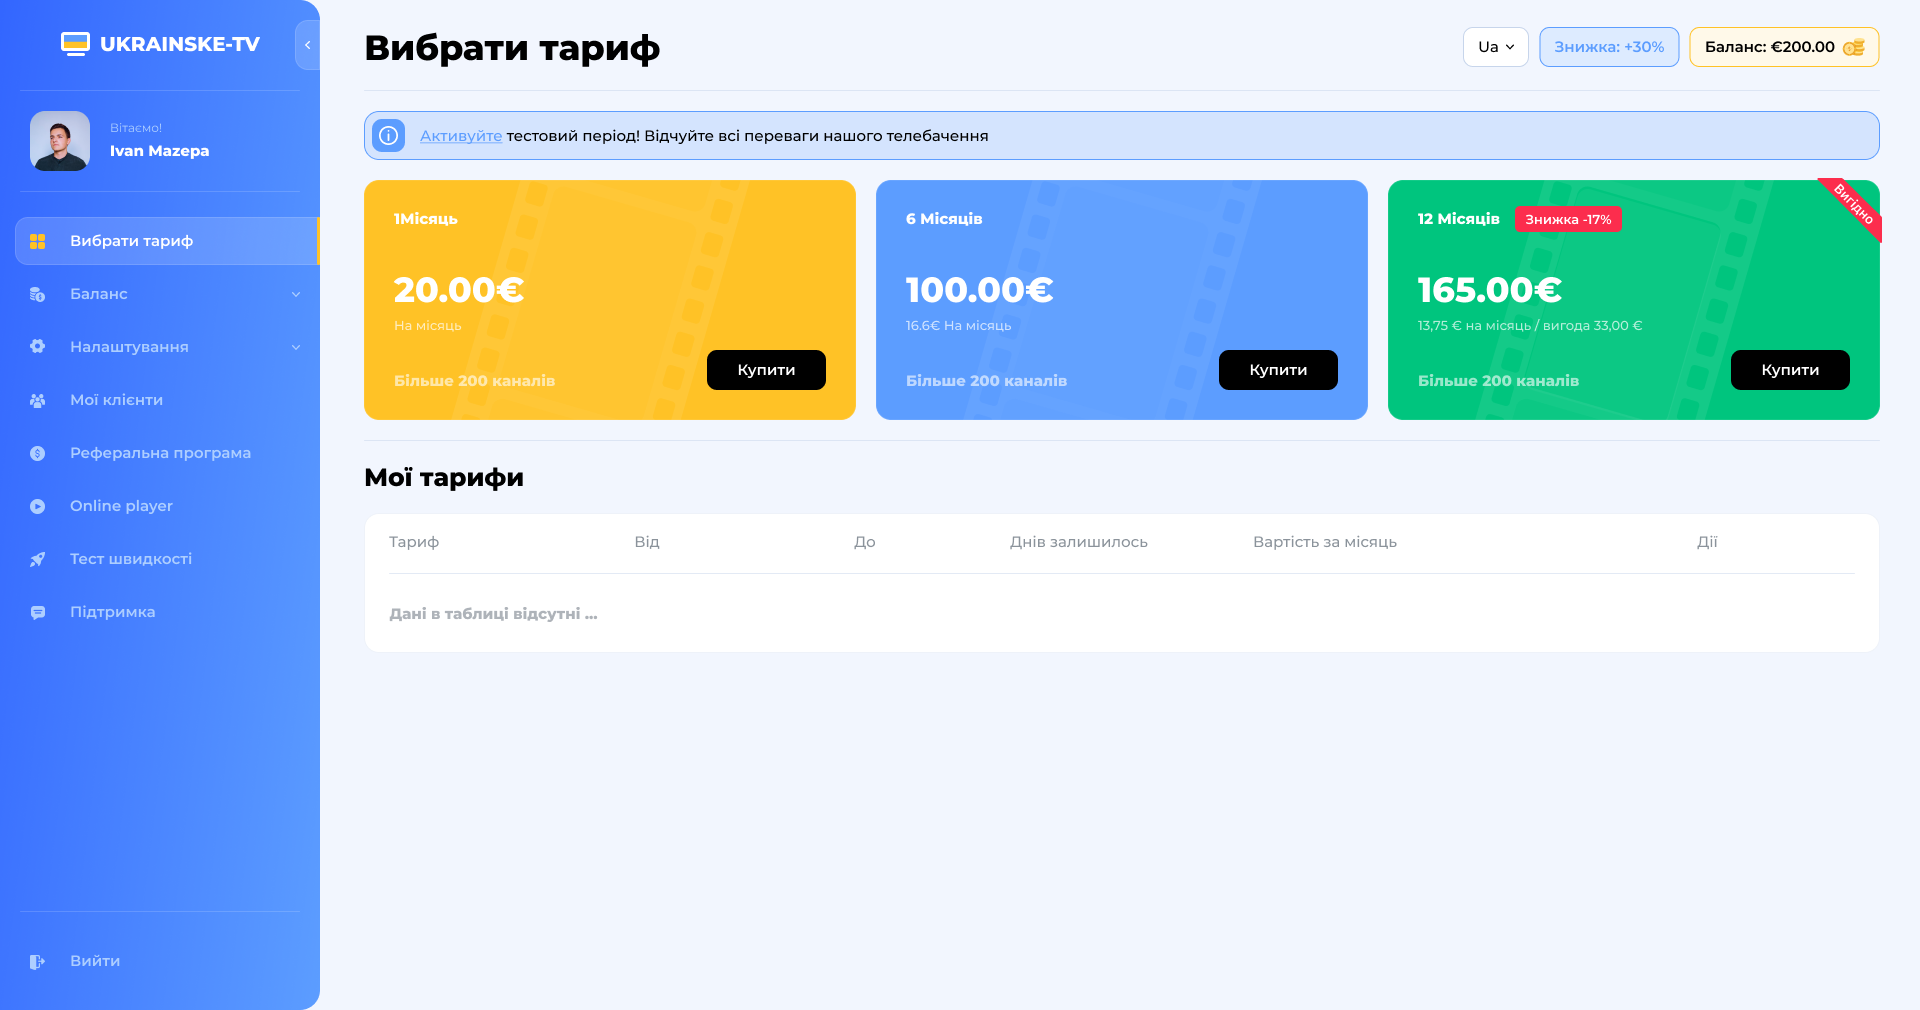 Ukrainske_01.0_Personal_Office_Tariff_1.0